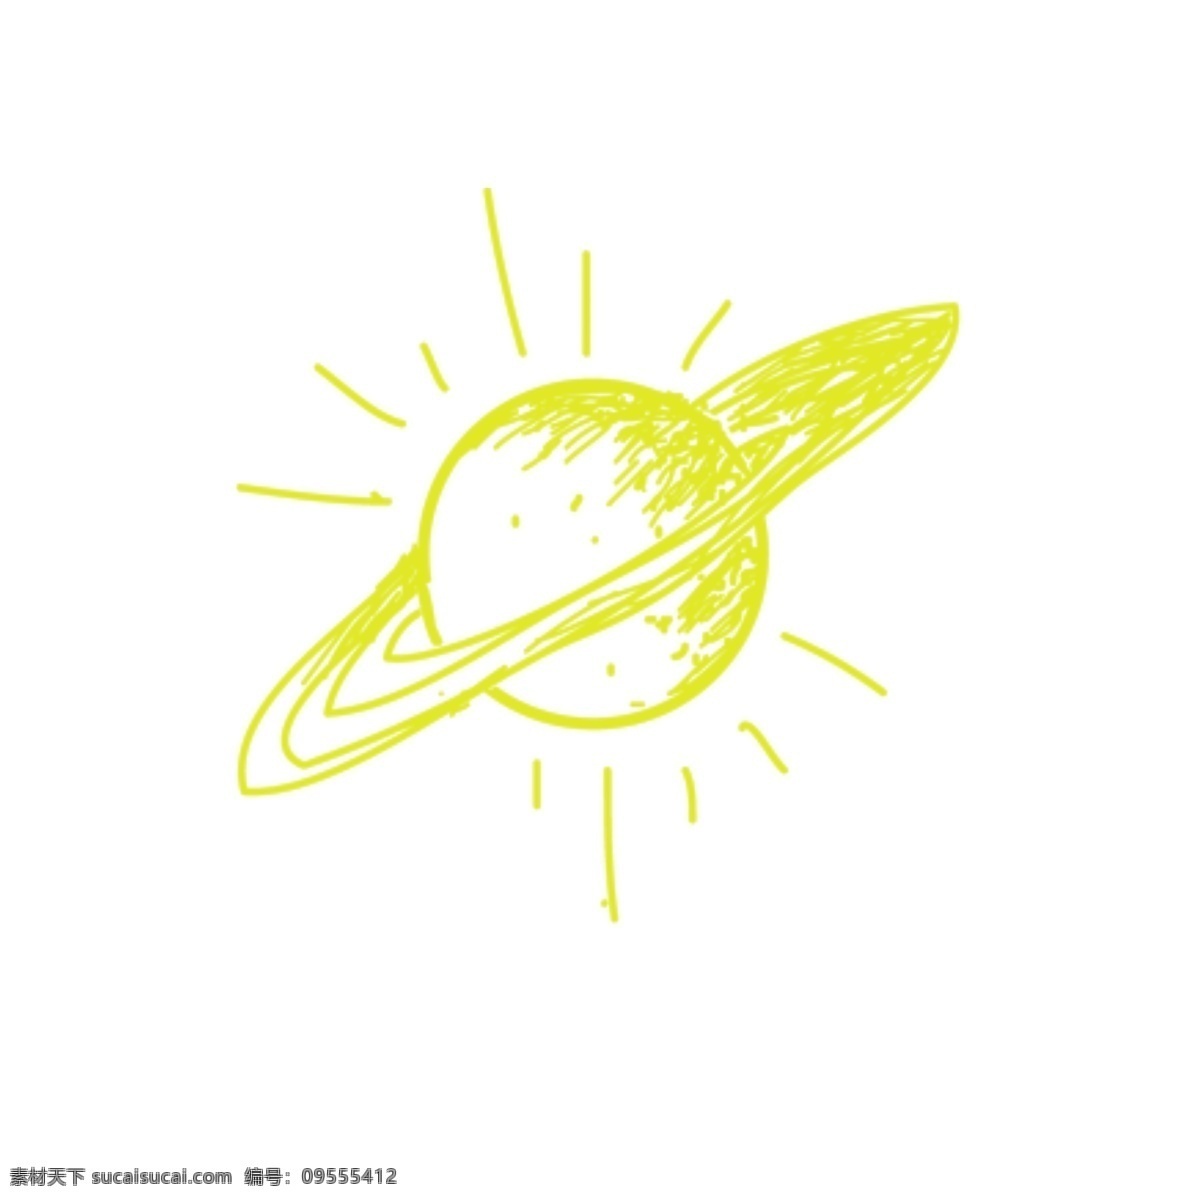 黄色 闪烁 土星 元素 星球 卡通土星 闪烁星球 宇宙星球 银河 宇宙行星 免抠 手账装饰 可爱卡通